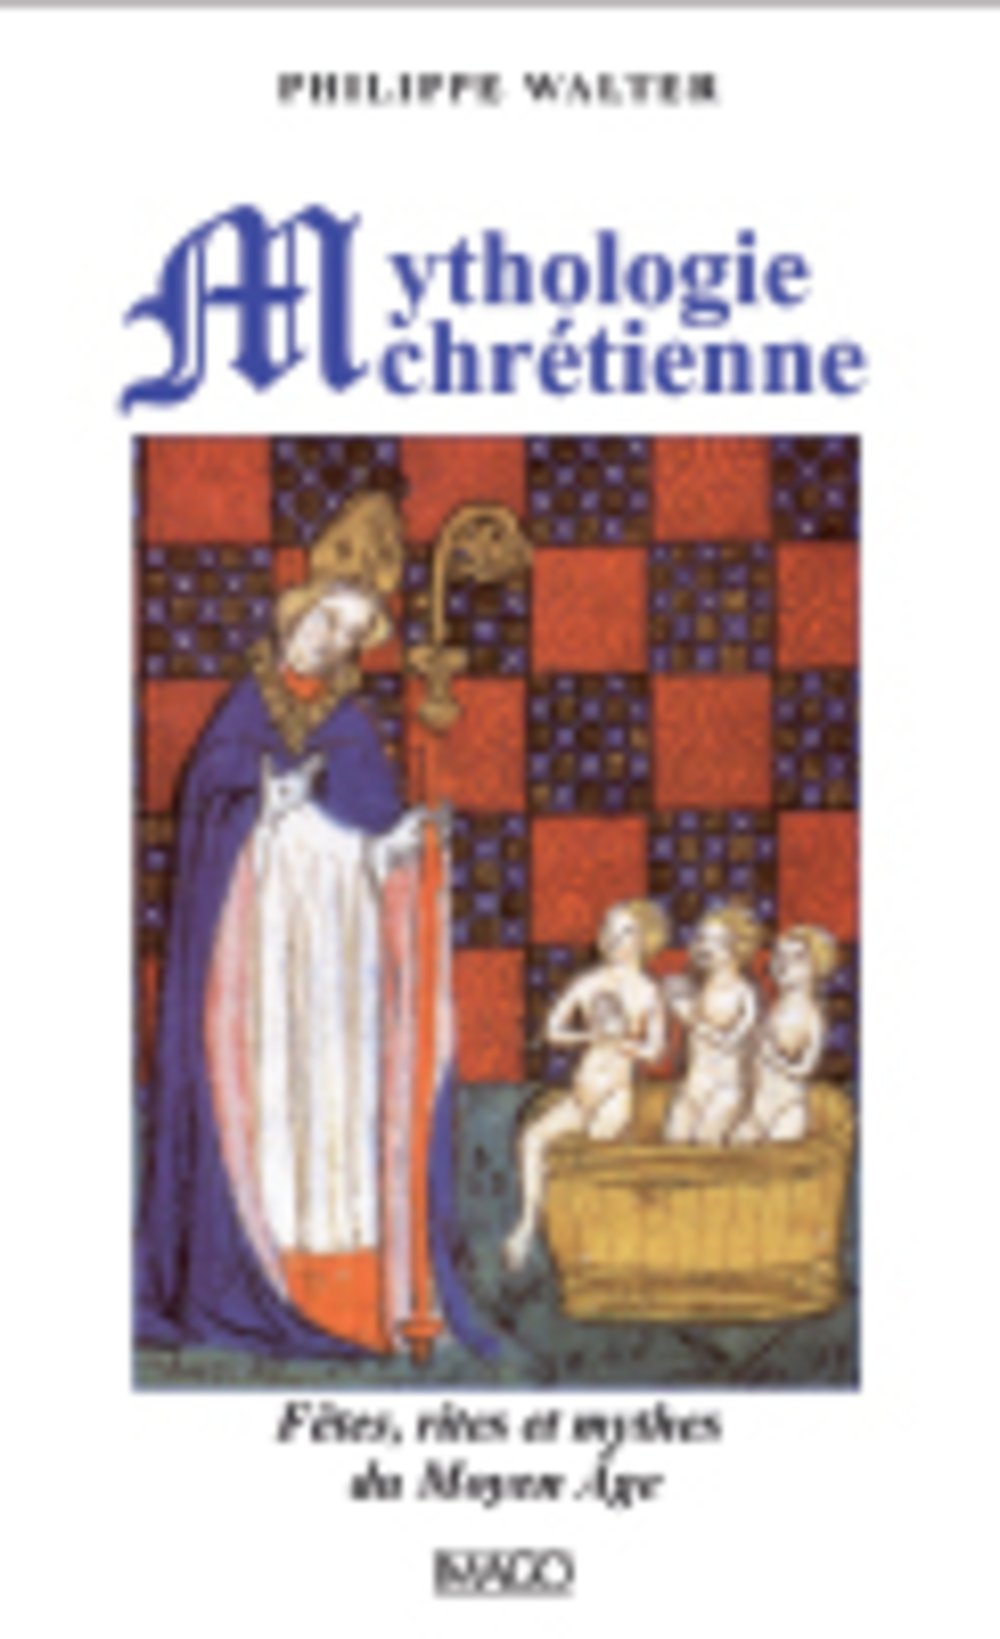 Mythologie chrétienne. Fêtes, rites et mythes du Moyen Age, 2015, 4e éd., 232 p.